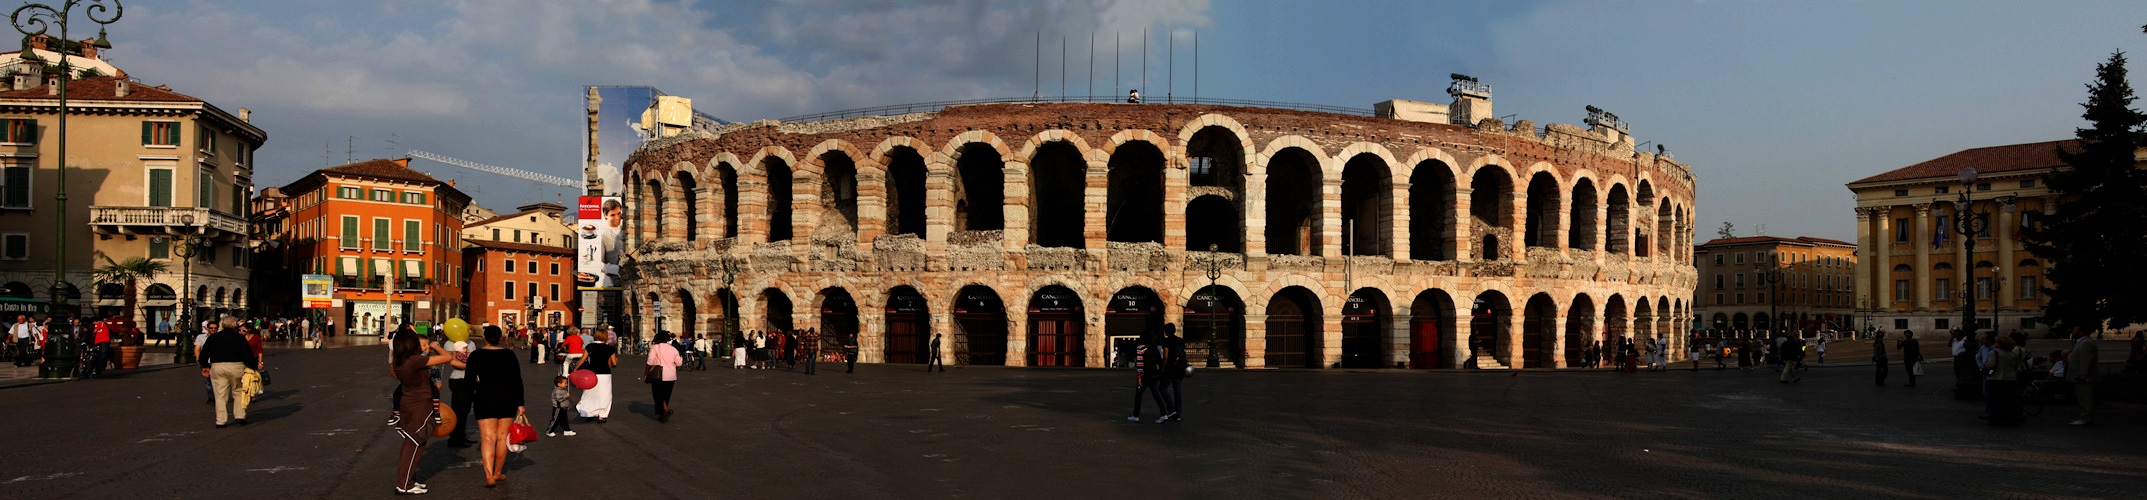 Die Arena von Verona in der Abendsonne.